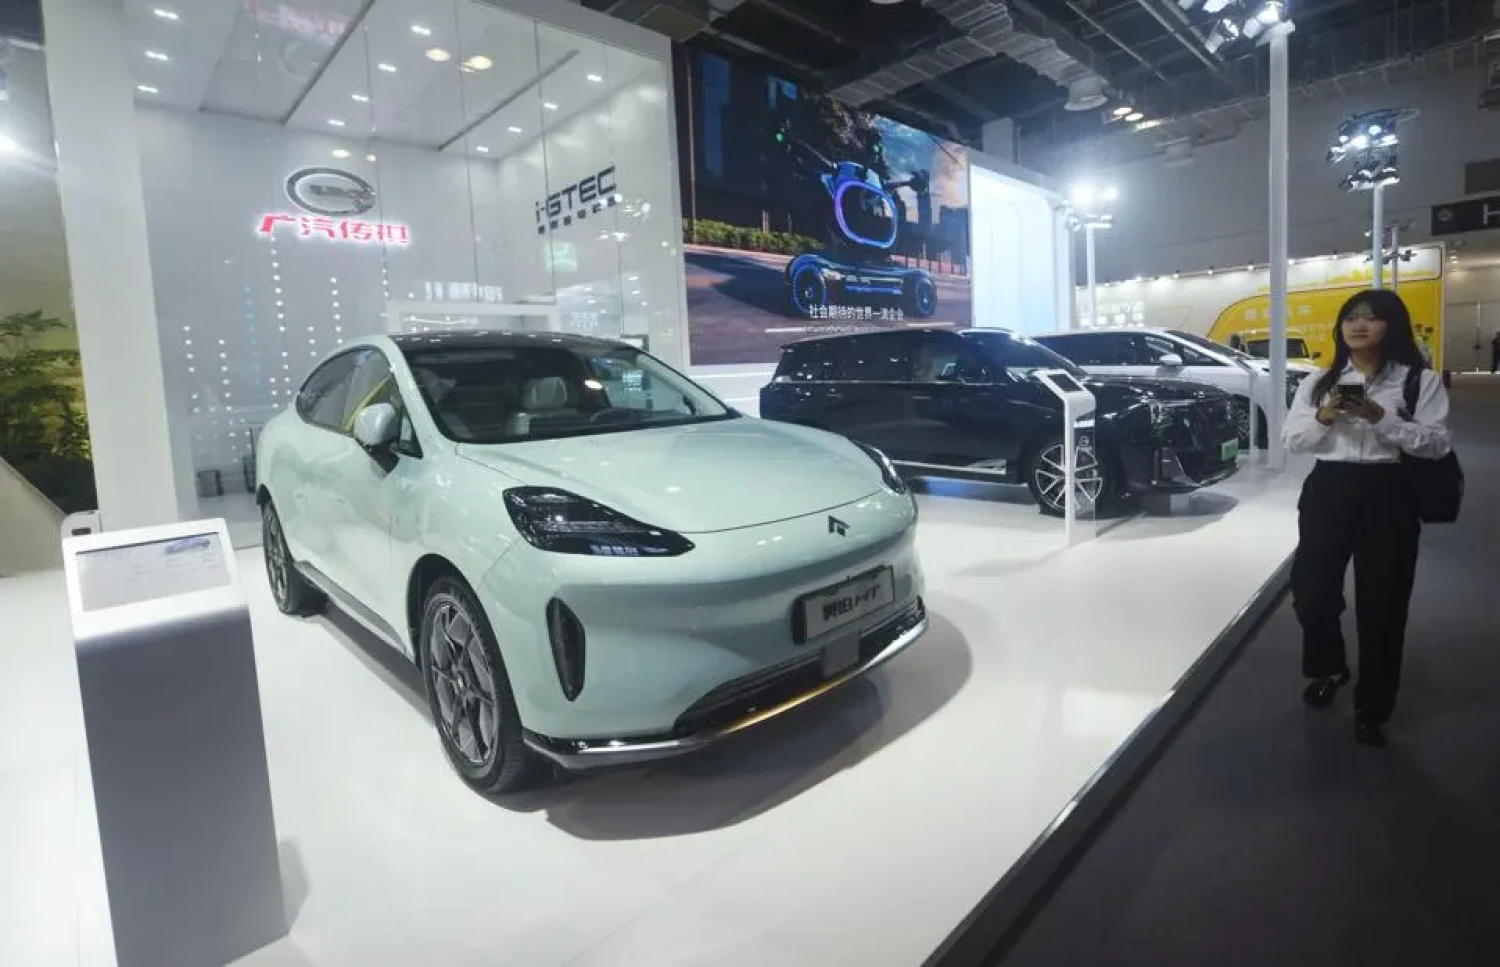 Prodej čínských elektromobilů v Evropě roste. Navzdory hrozbě vyšších cel při přepravě